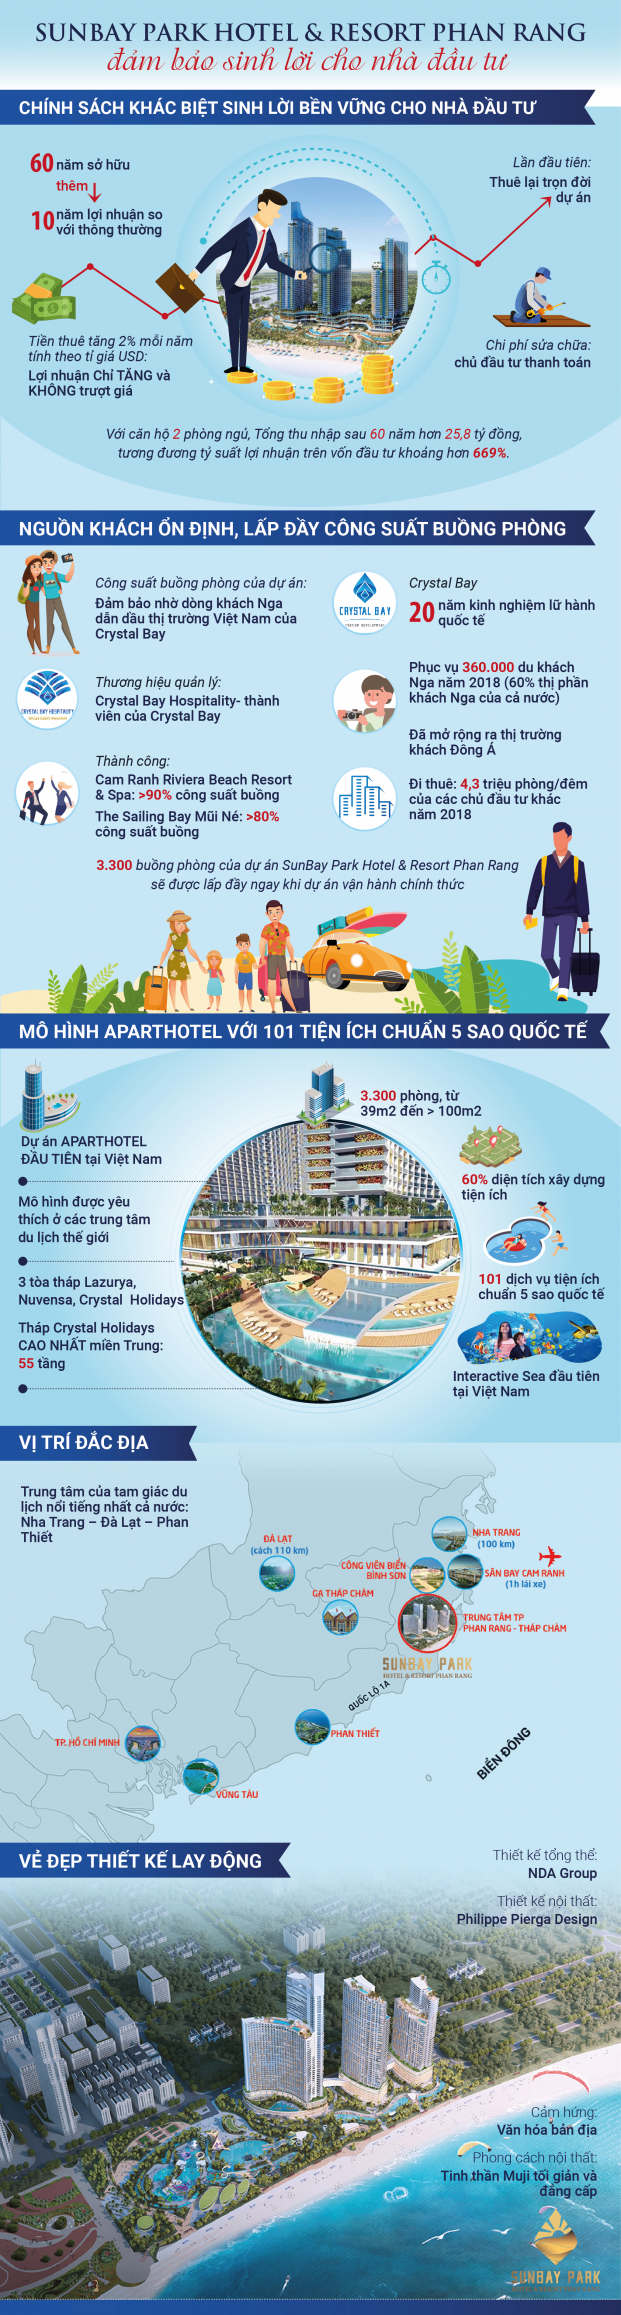 SunBay Park Hotel & Resort Phan Rang: Bảo chứng sinh lời cho dòng vốn đầu tư BĐS du lịch 1